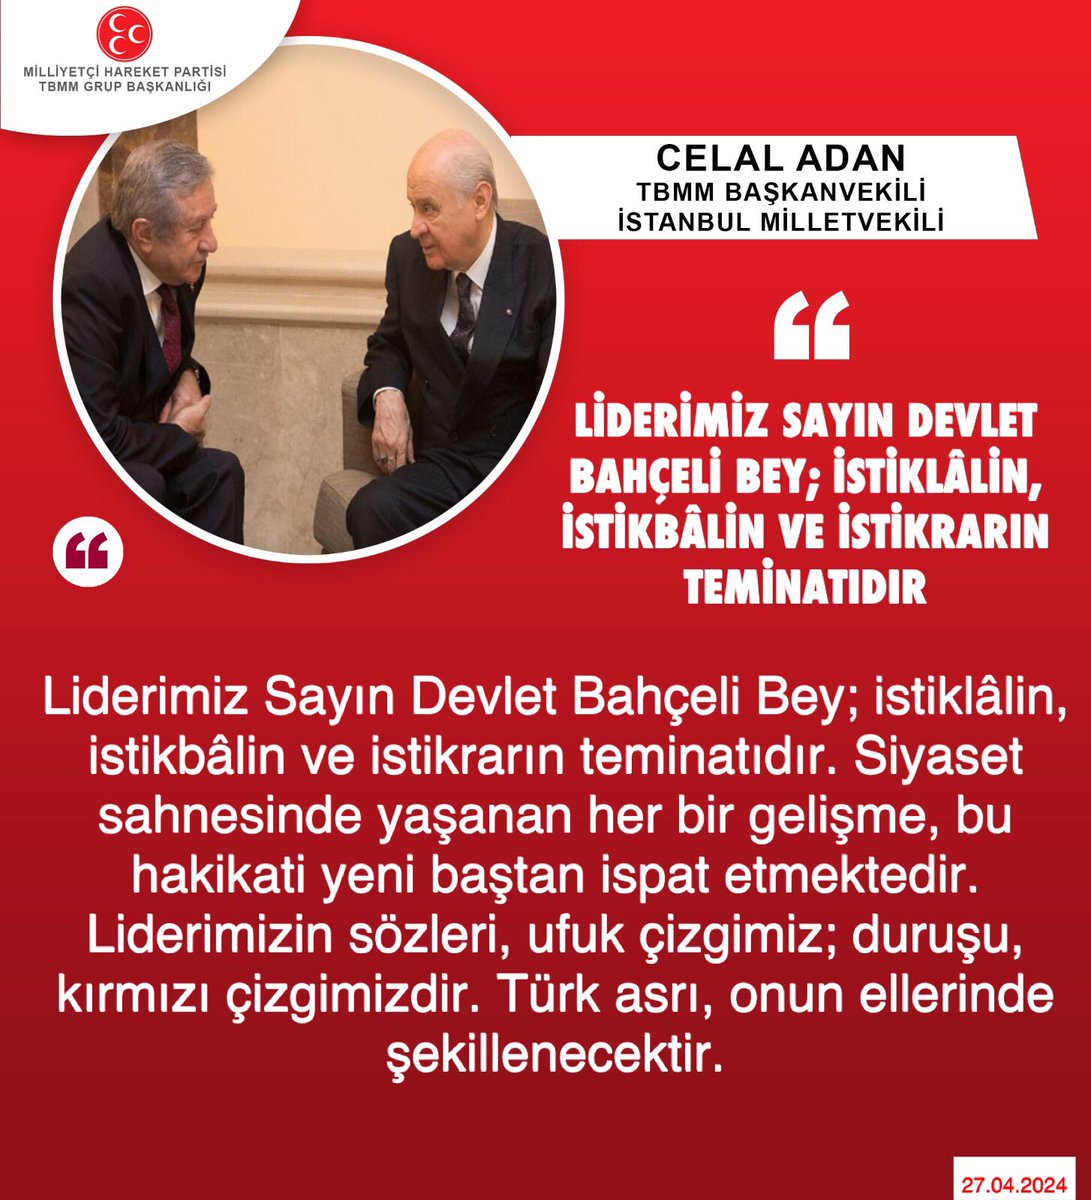 TBMM Başkanvekili ve İstanbul Milletvekilimiz Celal Adan @celal_adan: Liderimiz Sayın Devlet Bahçeli Bey; istiklâlin, istikbâlin ve istikrarın teminatıdır